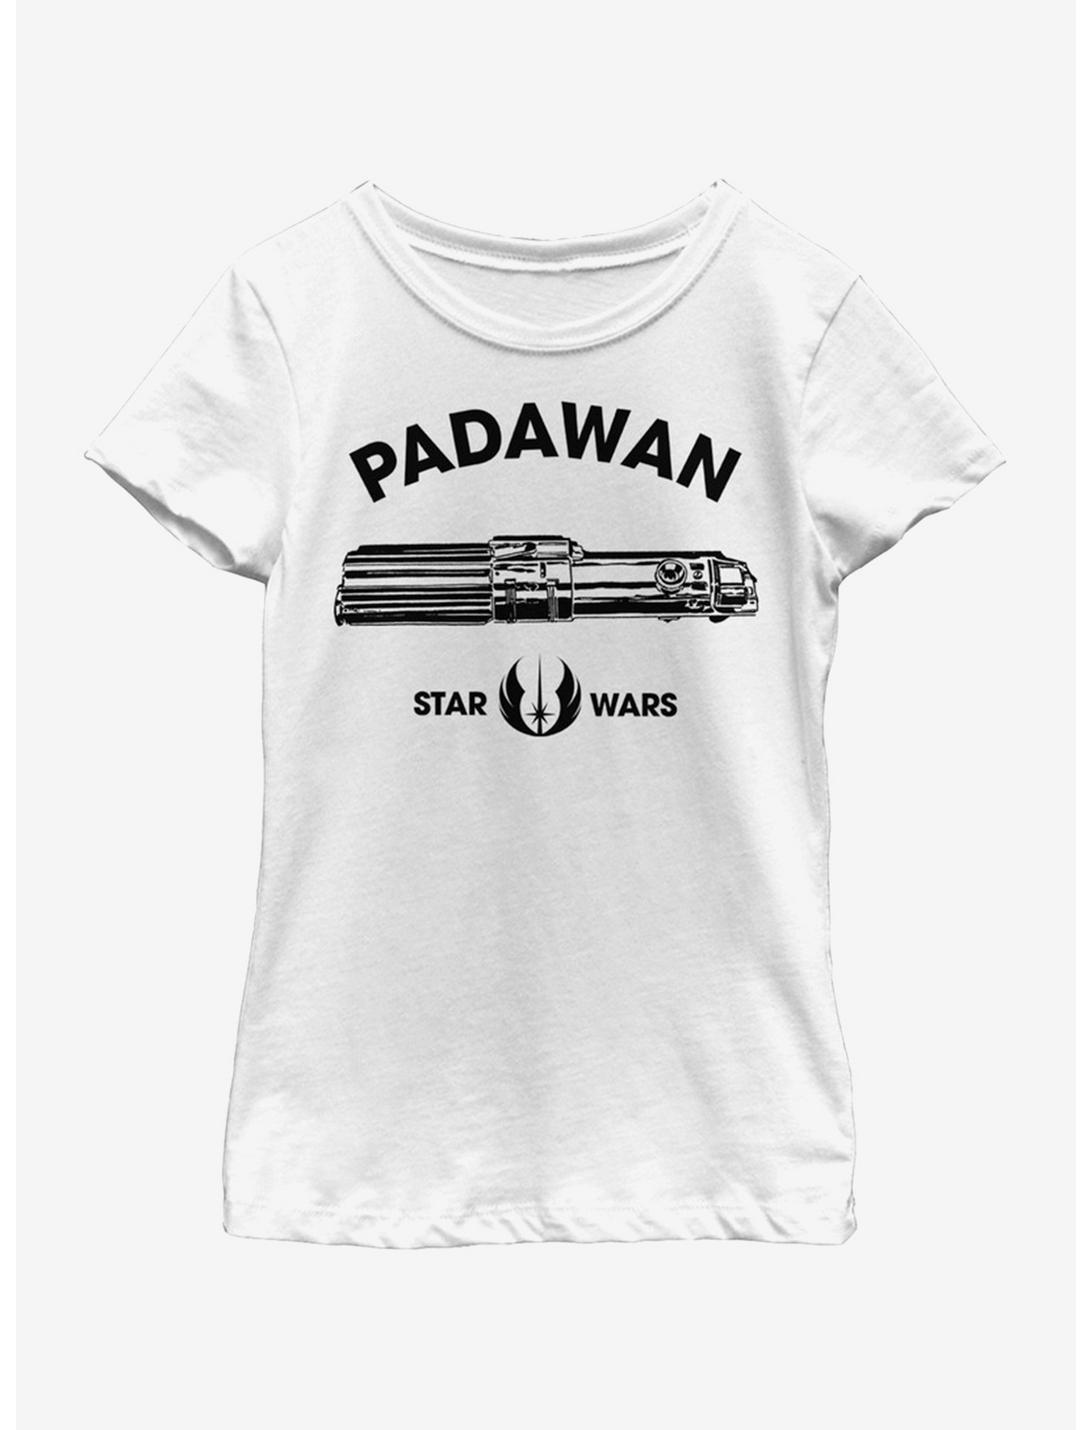 Star Wars Padawan Youth Girls T-Shirt, WHITE, hi-res